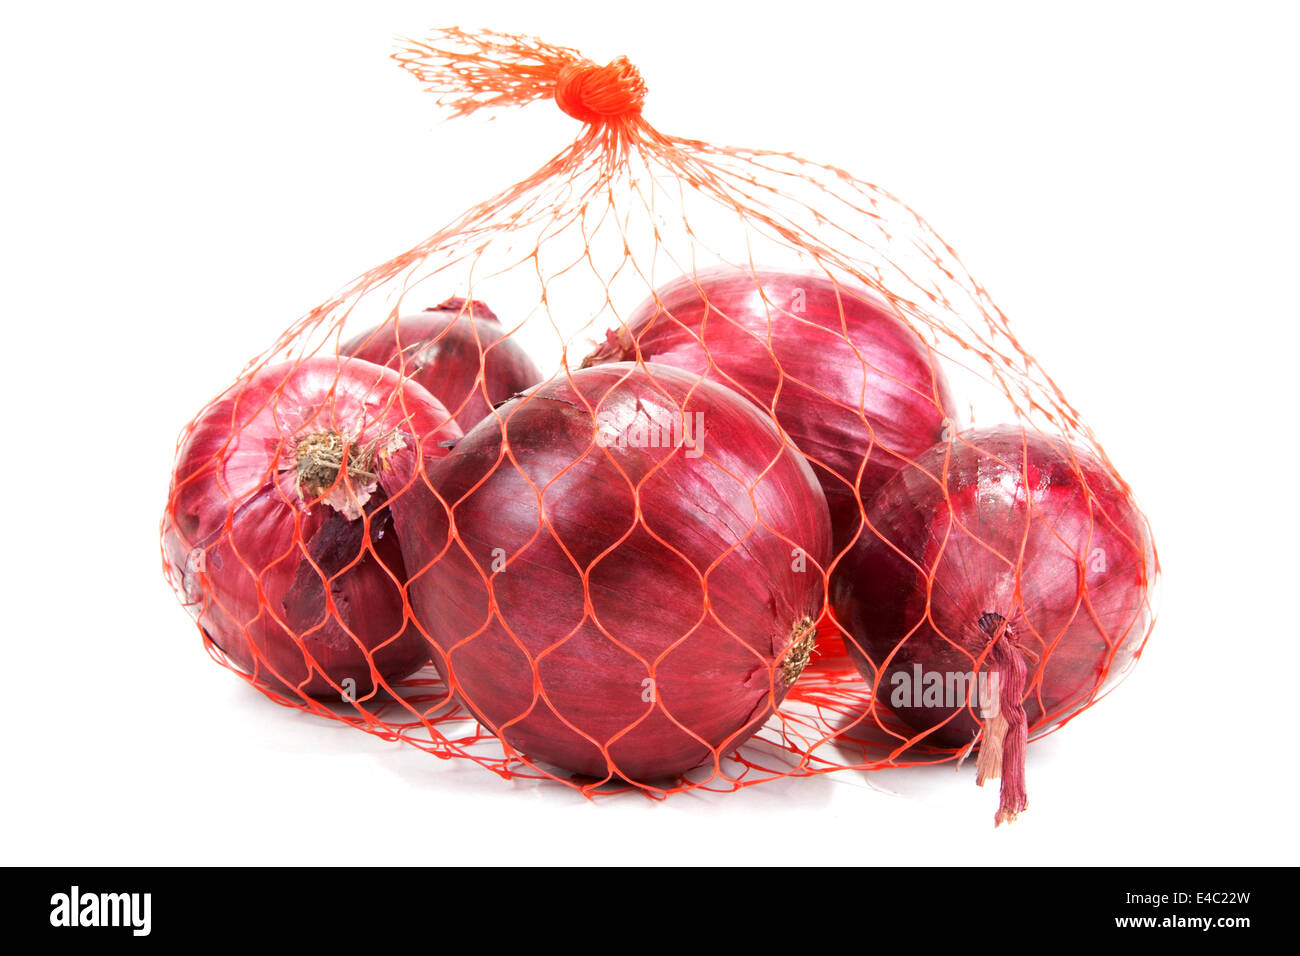 En el envasado de cebolla roja de red net Foto de stock